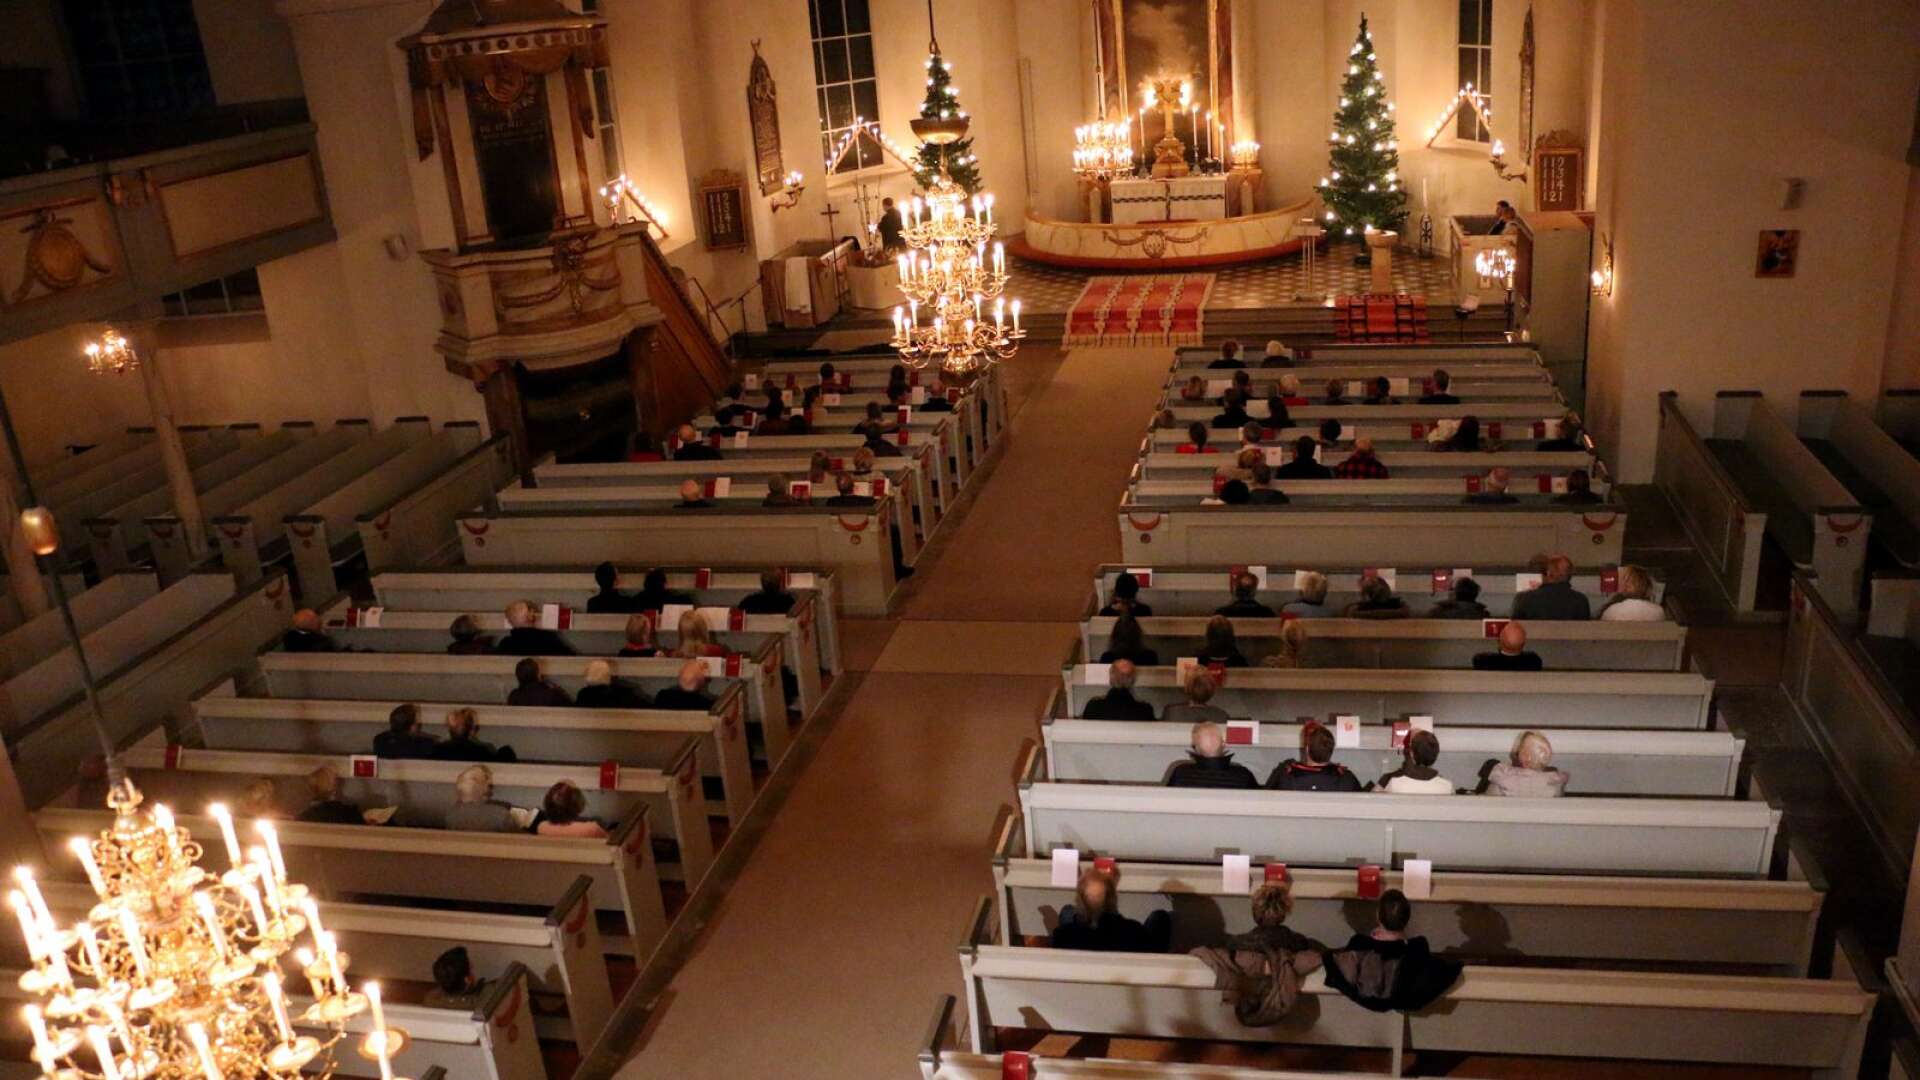 Julottan i Filipstads kyrka börjar klockan sju på juldagen precis som vanligt, men i flera andra kyrkor inleds julottan först vid nio.